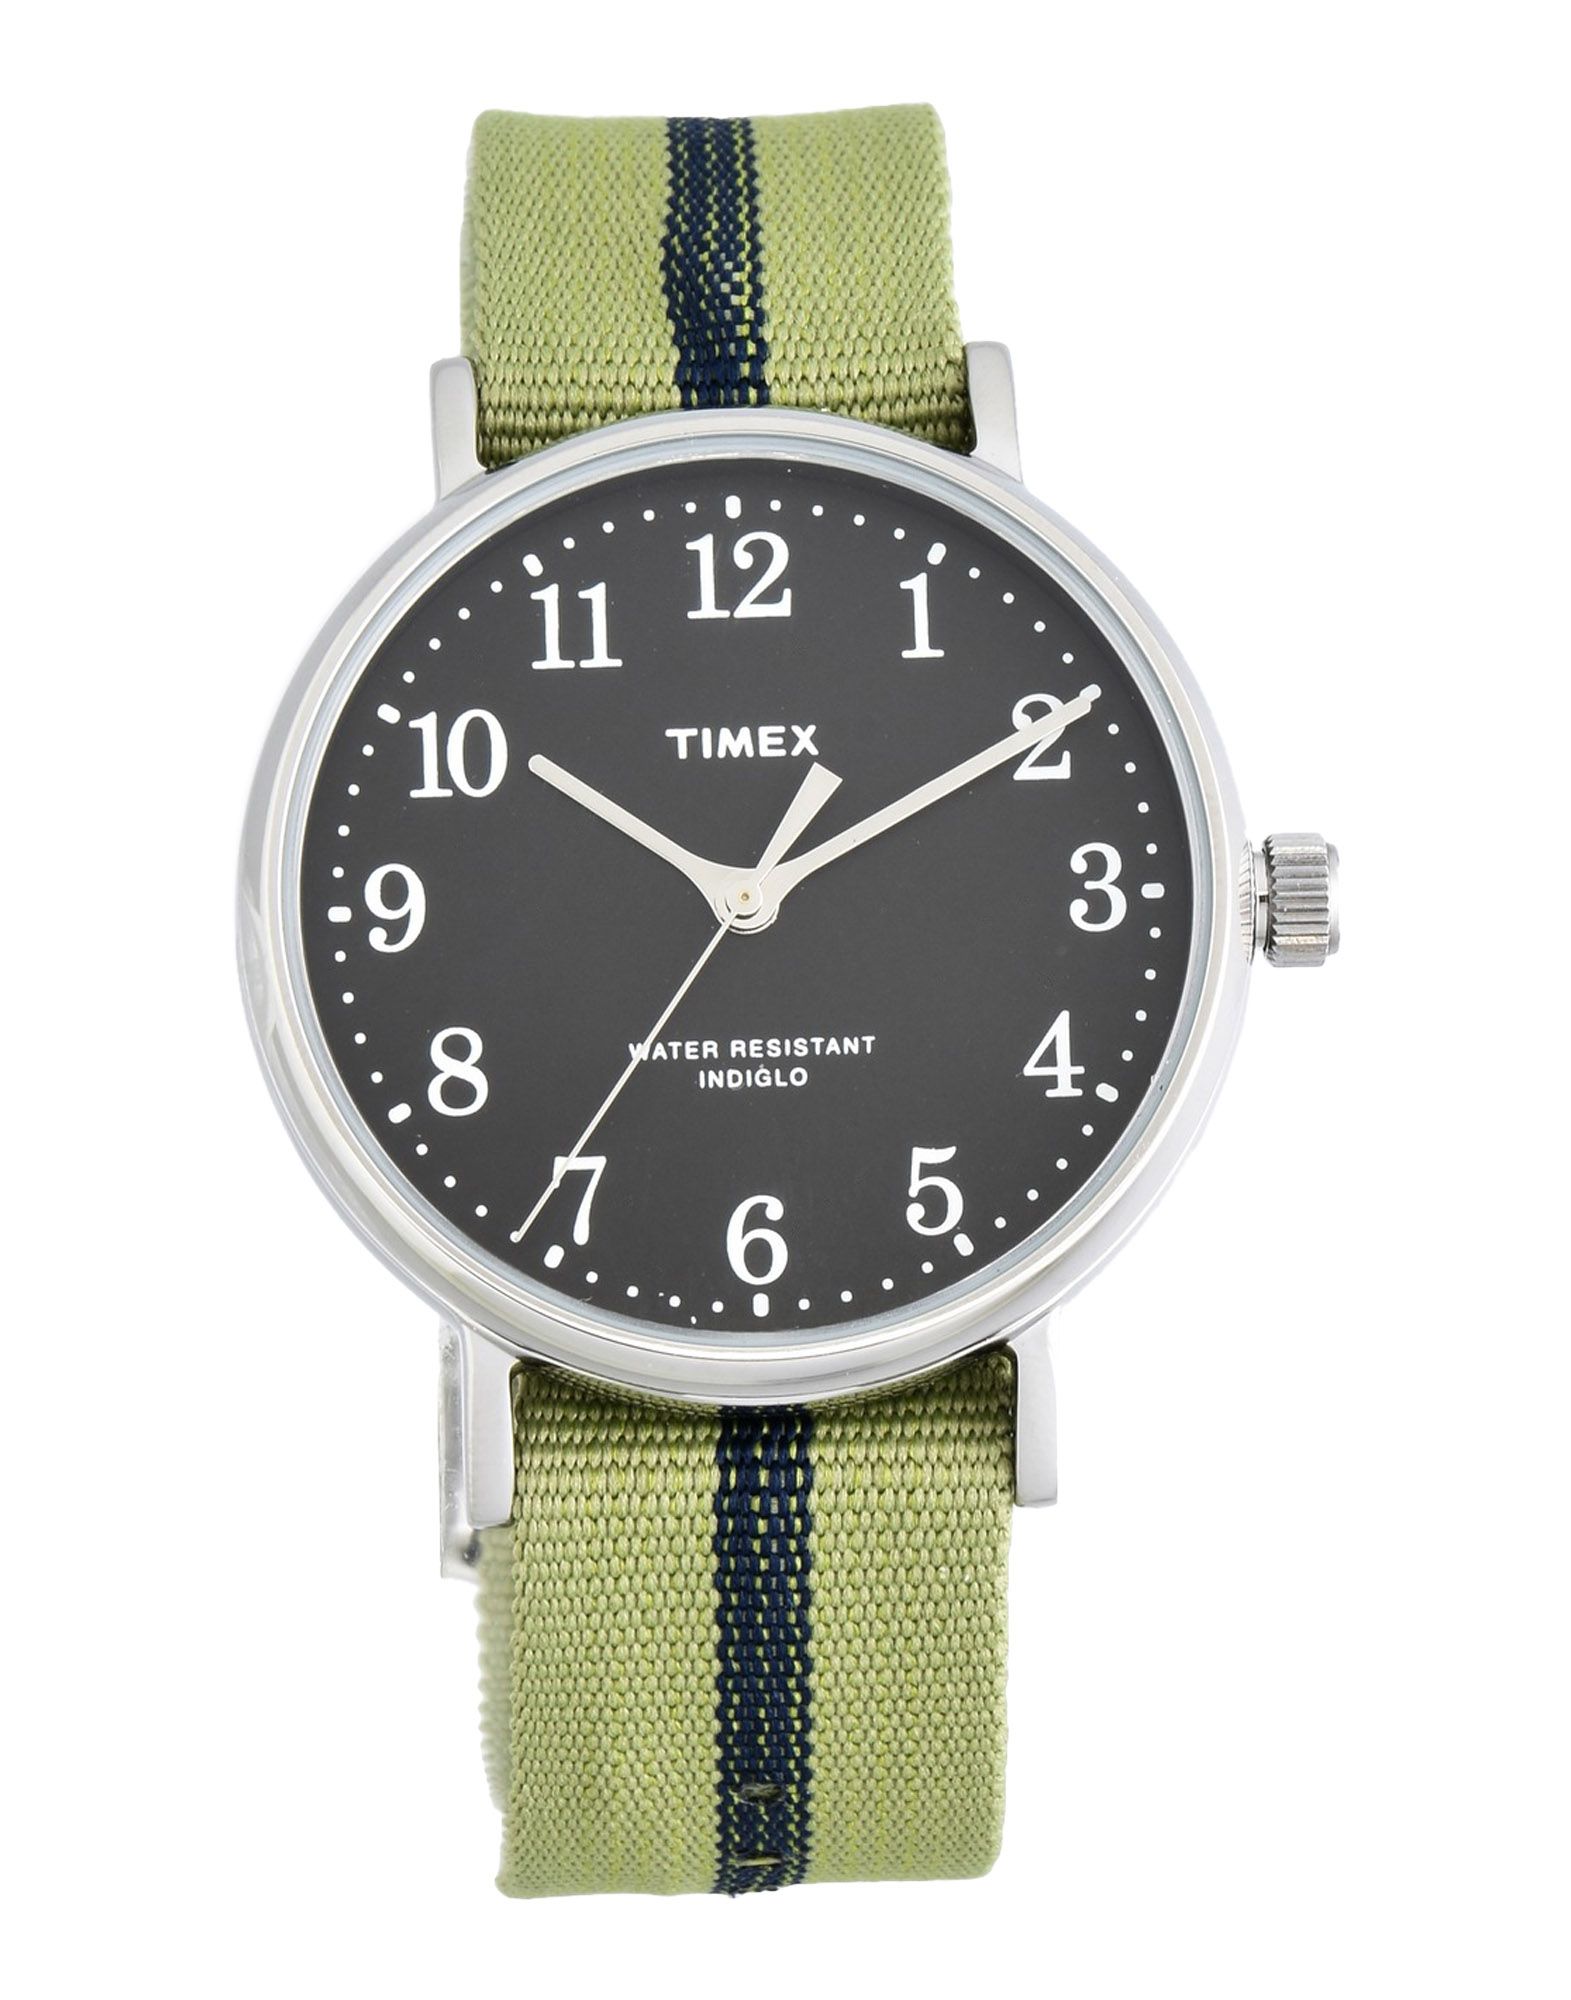 《送料無料》TIMEX Unisex 腕時計 ビタミングリーン 金属